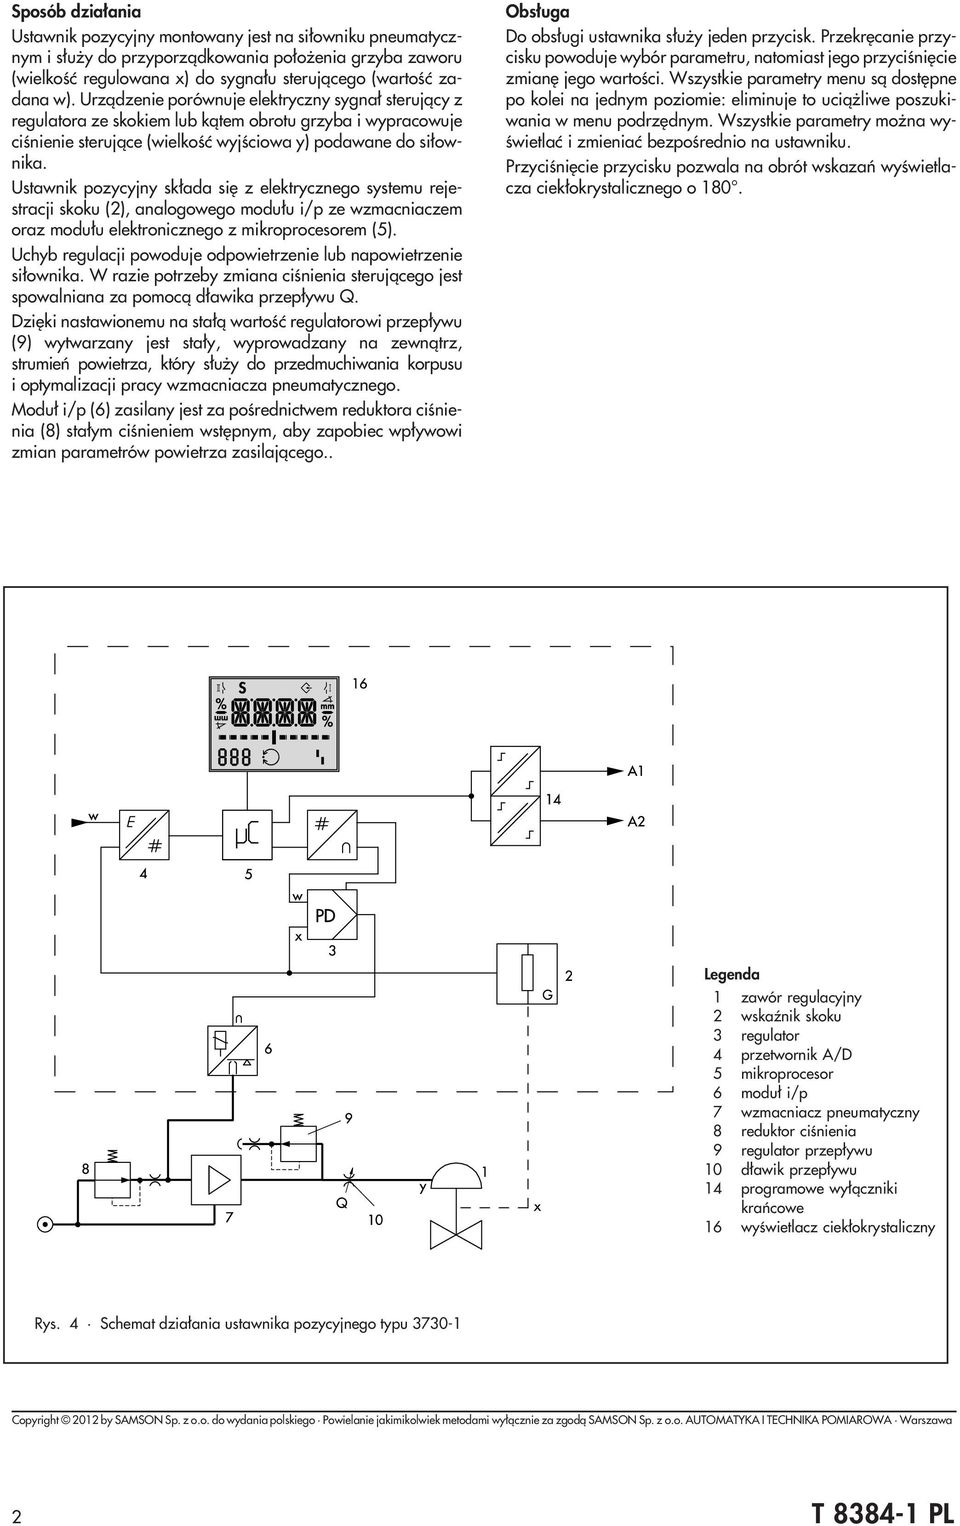 Ustawnik pozycyjny sk³ada siê z elektrycznego systemu rejestracji skoku (2), analogowego modu³u i/p ze wzmacniaczem oraz modu³u elektronicznego z mikroprocesorem (5).